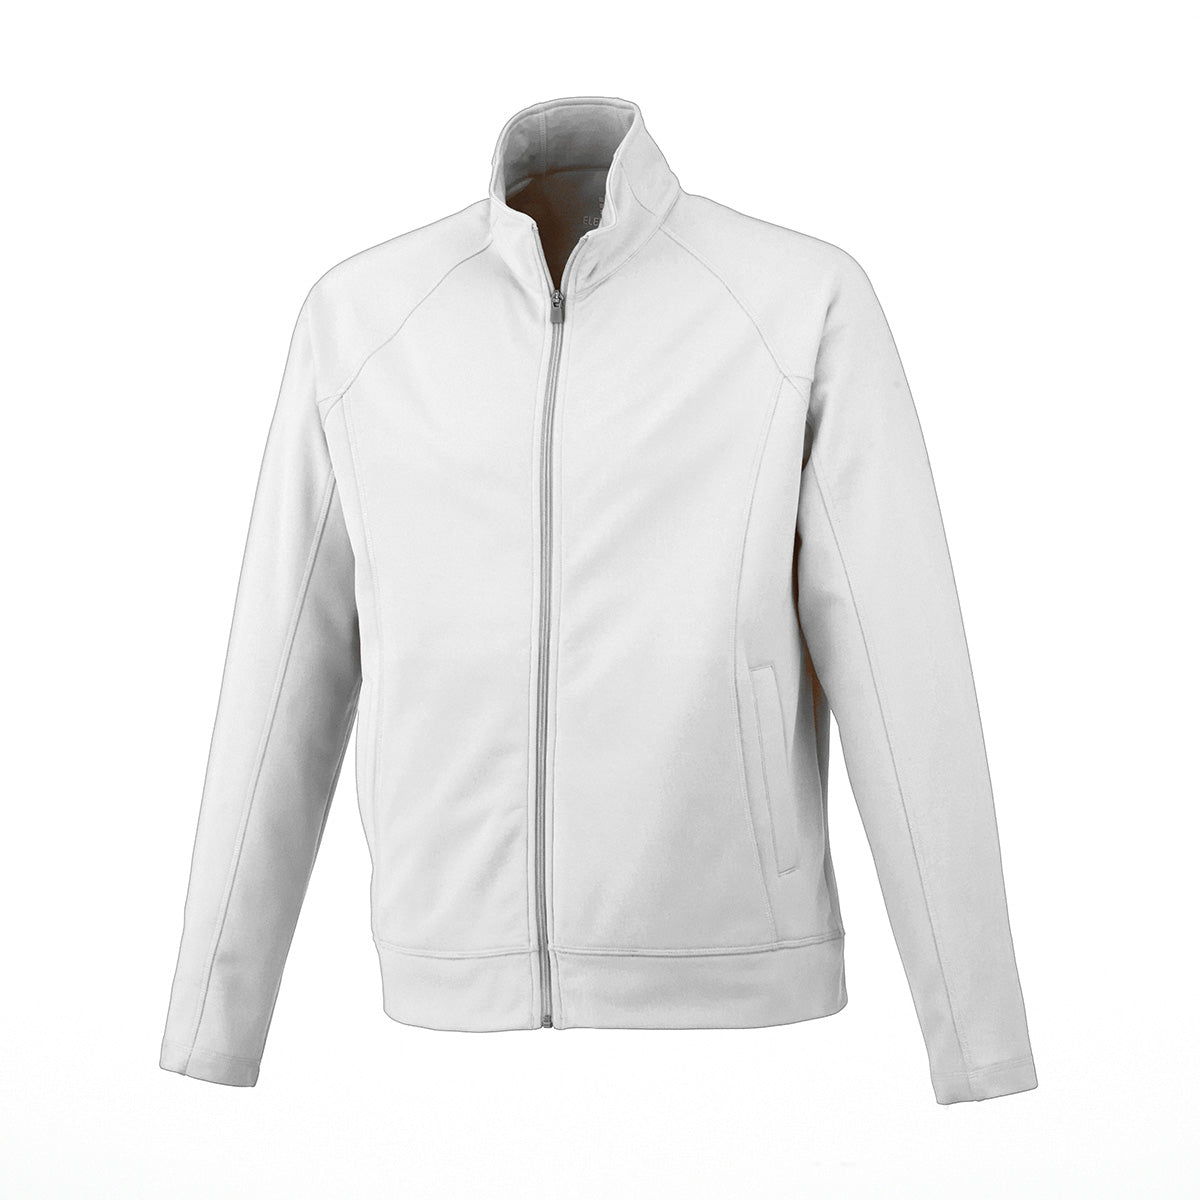 Veste de travail 100 % tricot de jersey pour homme Uniformes Sélect #18117 blanc